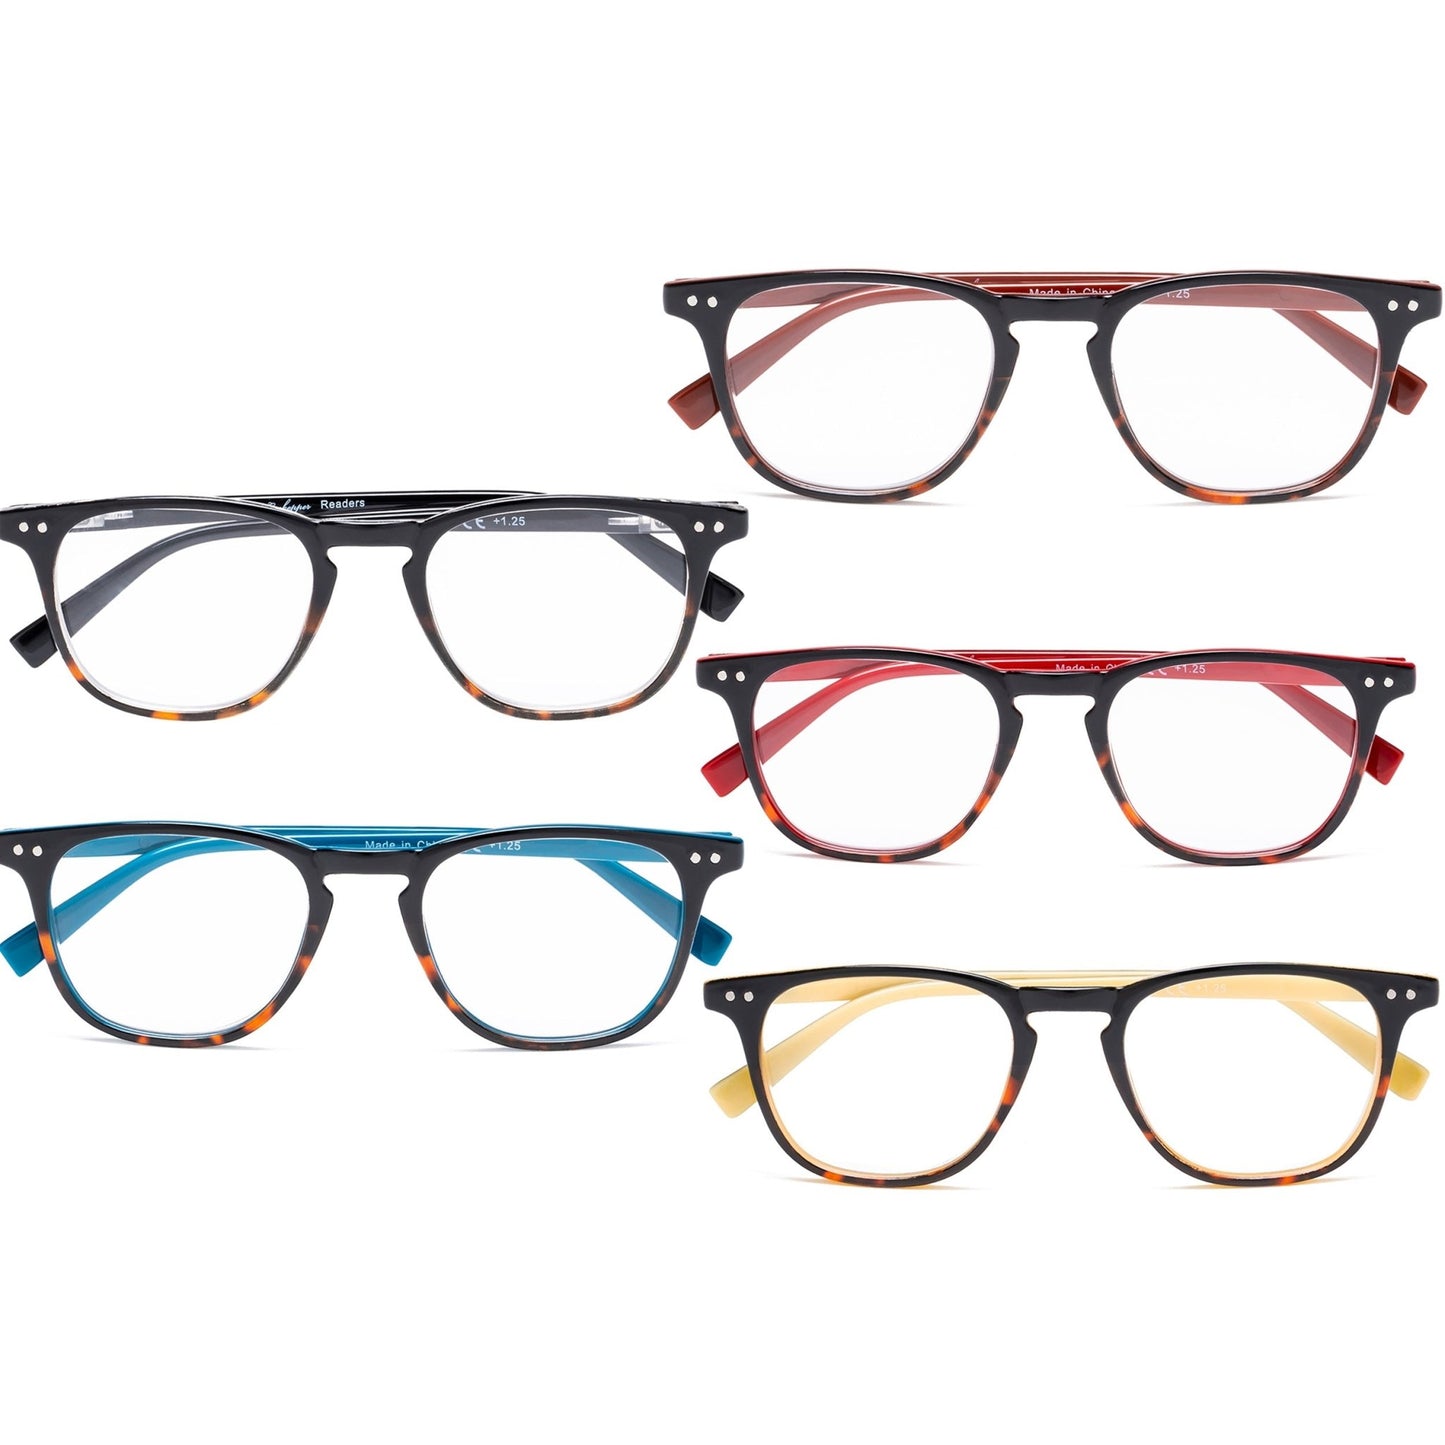 5 Pack Stylish Wayfarer Reading Glasses for Women Men R179